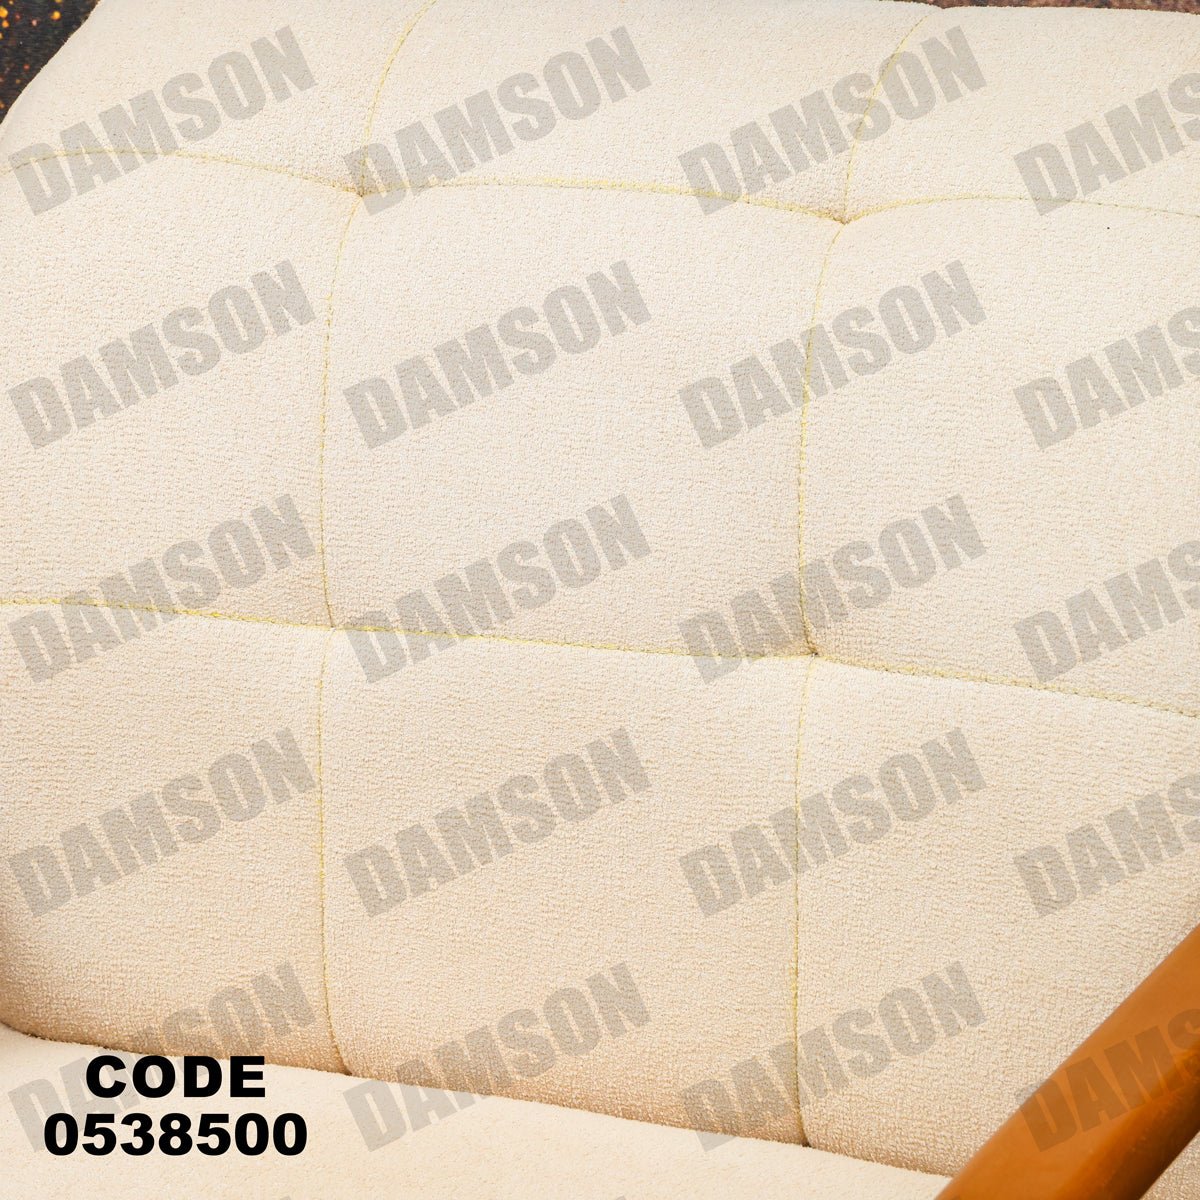 فوتية 1-385 - Damson Furnitureفوتية 1-385